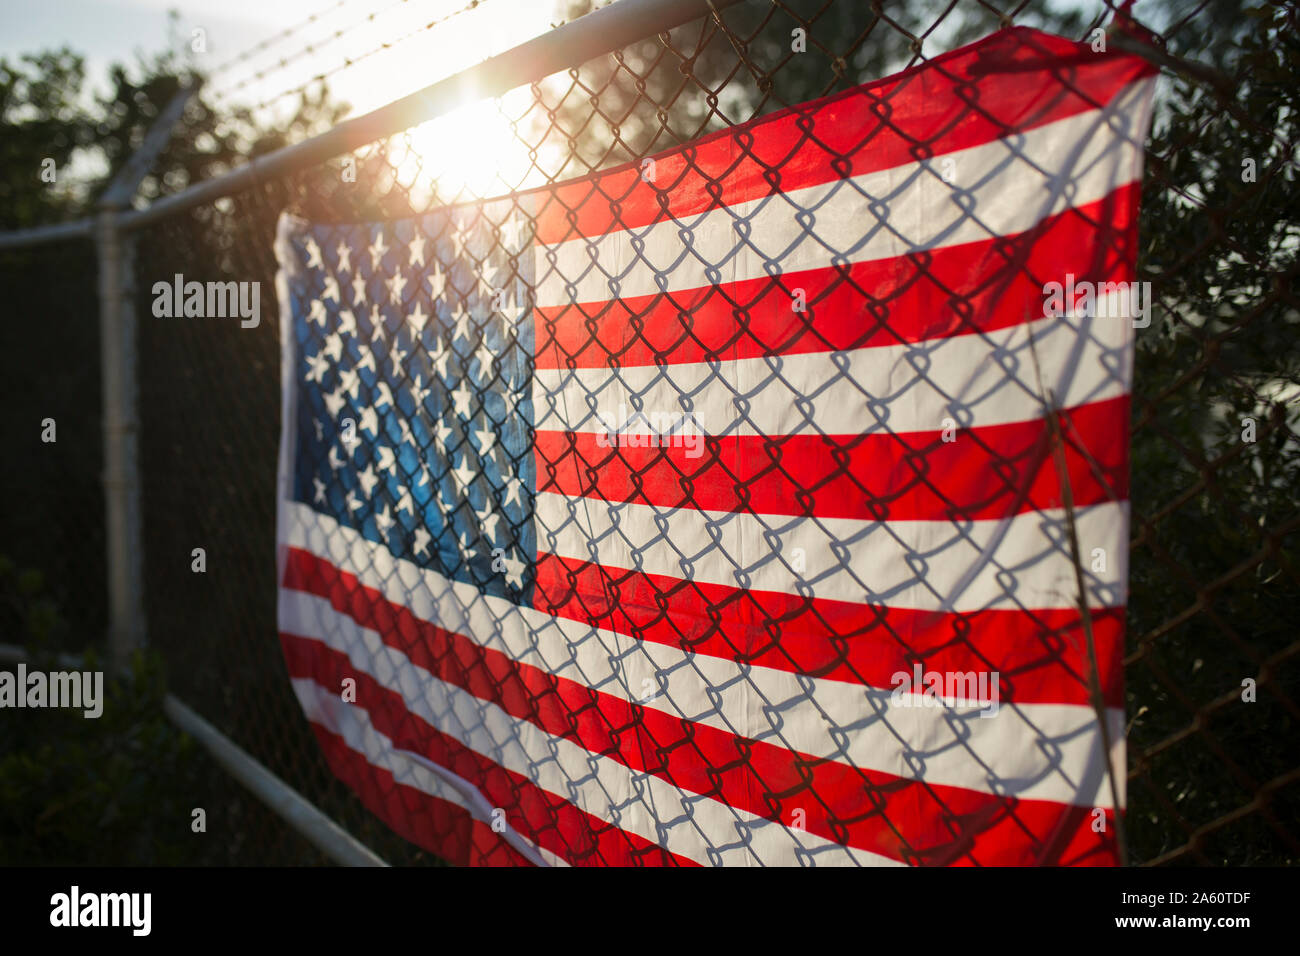 US-bandiera americana sul filo spinato, close up Foto Stock